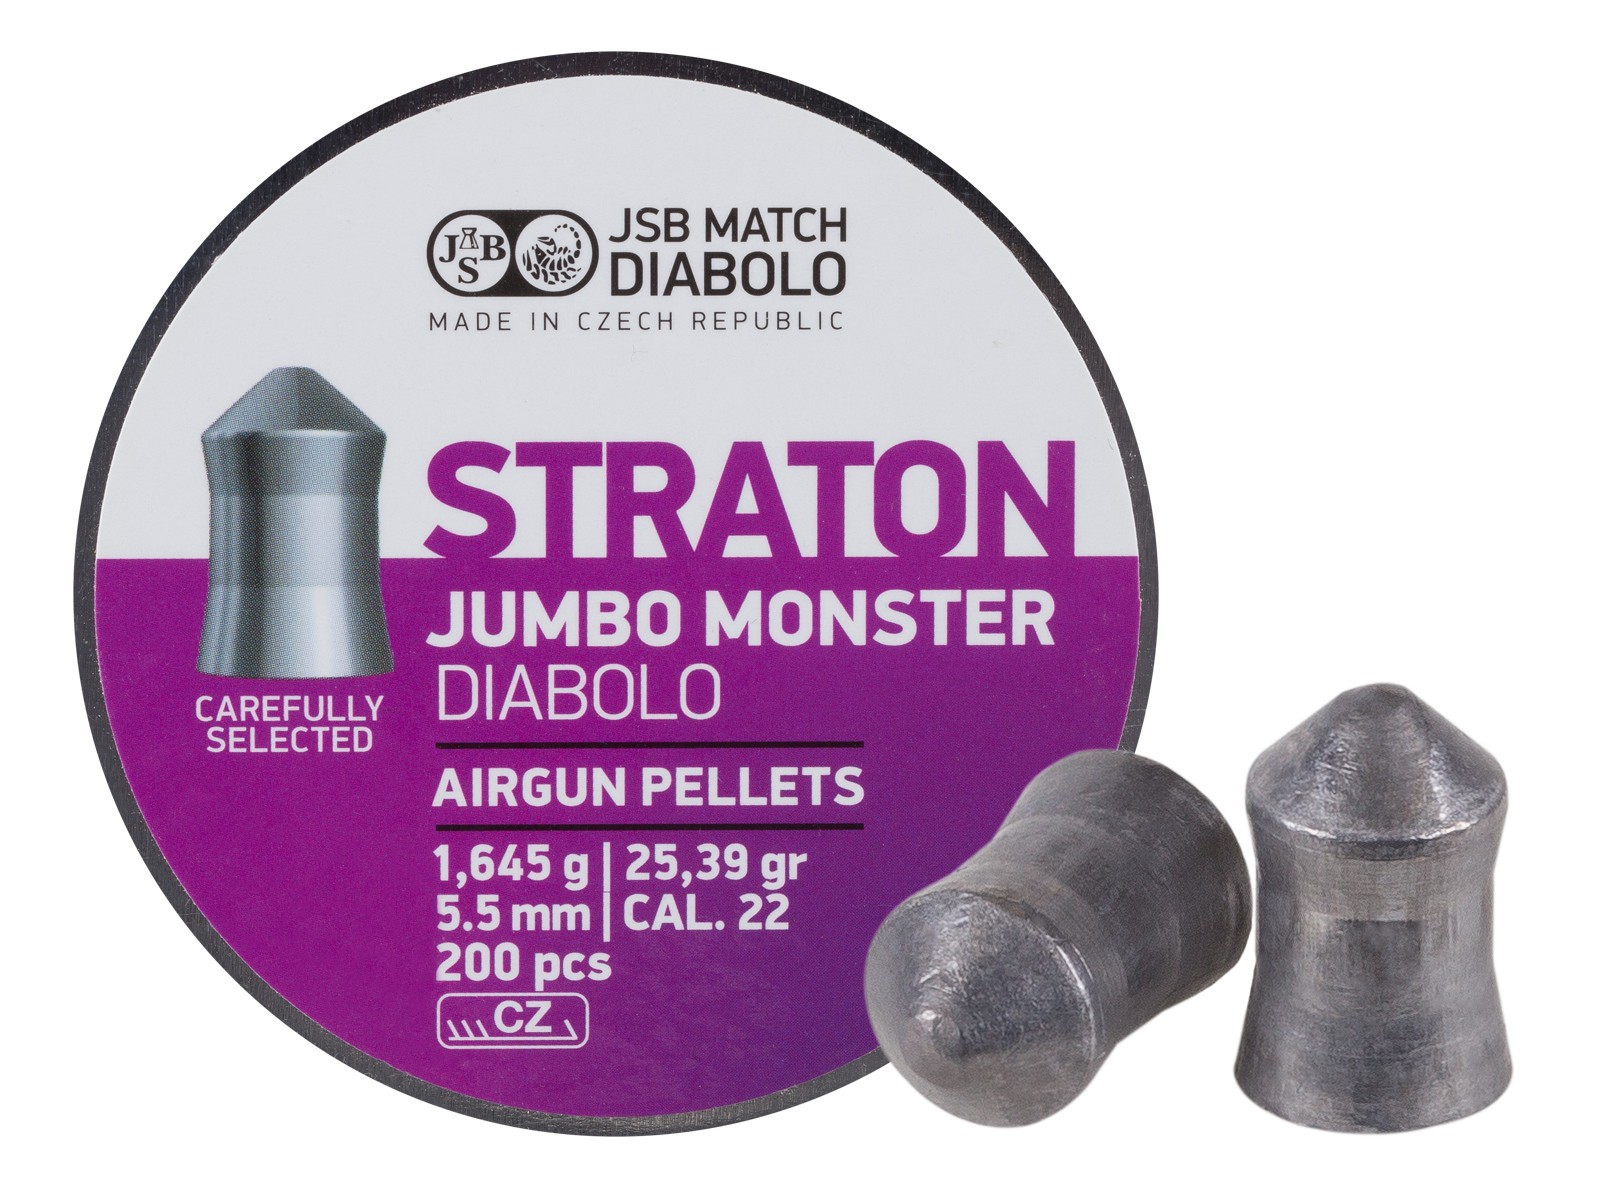 JSB Diabolo Jumbo Straton Monster, .22-Cal, 25.39gr, 200 ct